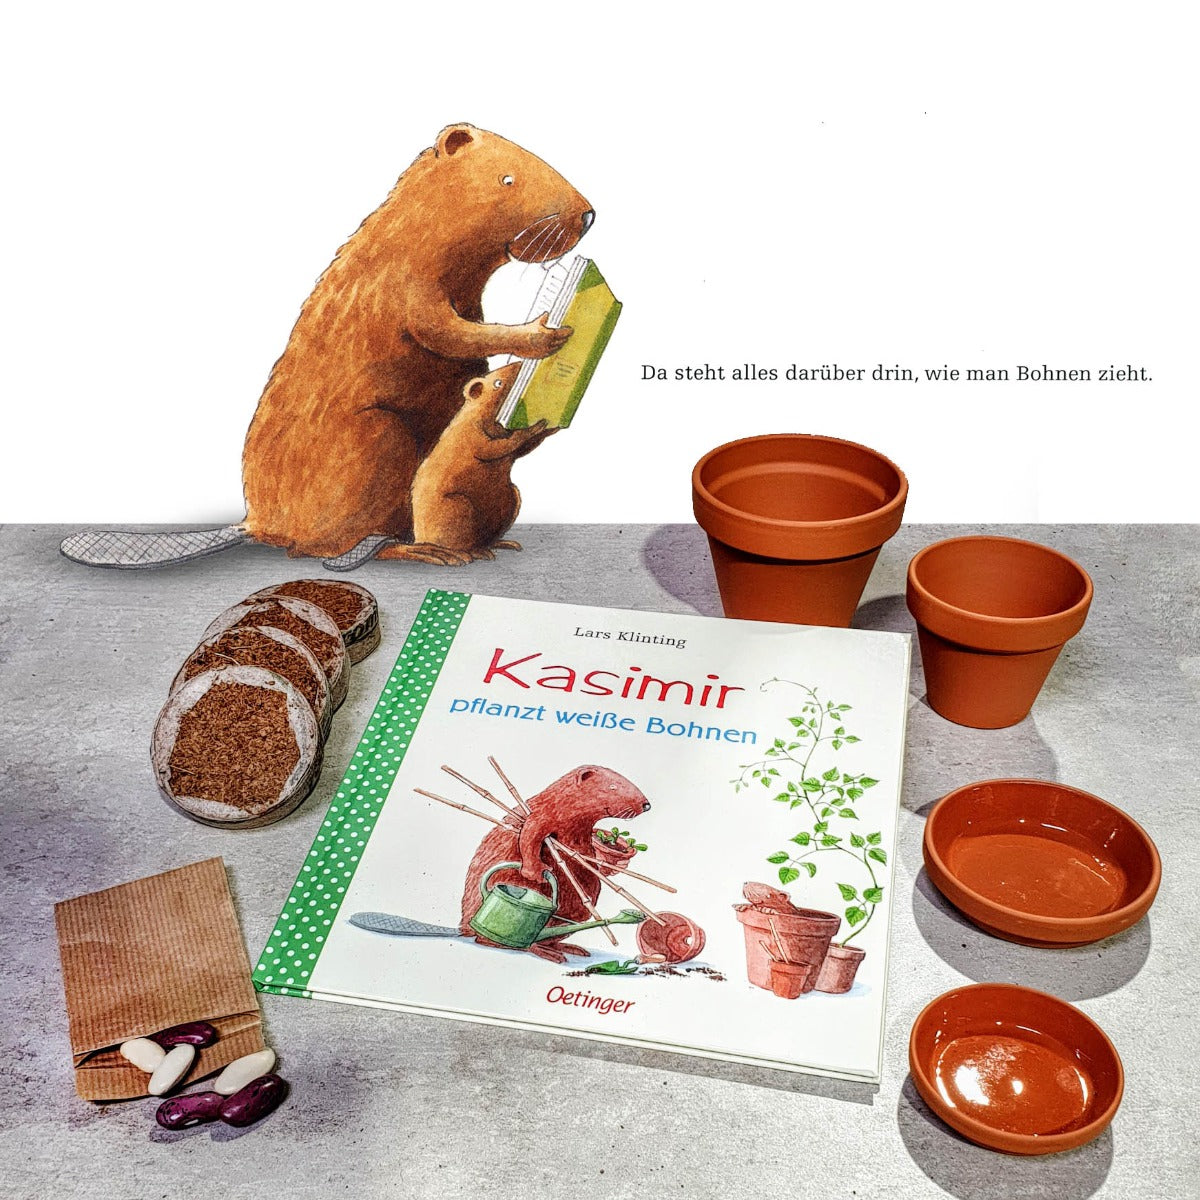 "Kasimir pflanzt weiße Bohnen" - Pflanzset mit Kinderbuch ab 4 Jahren